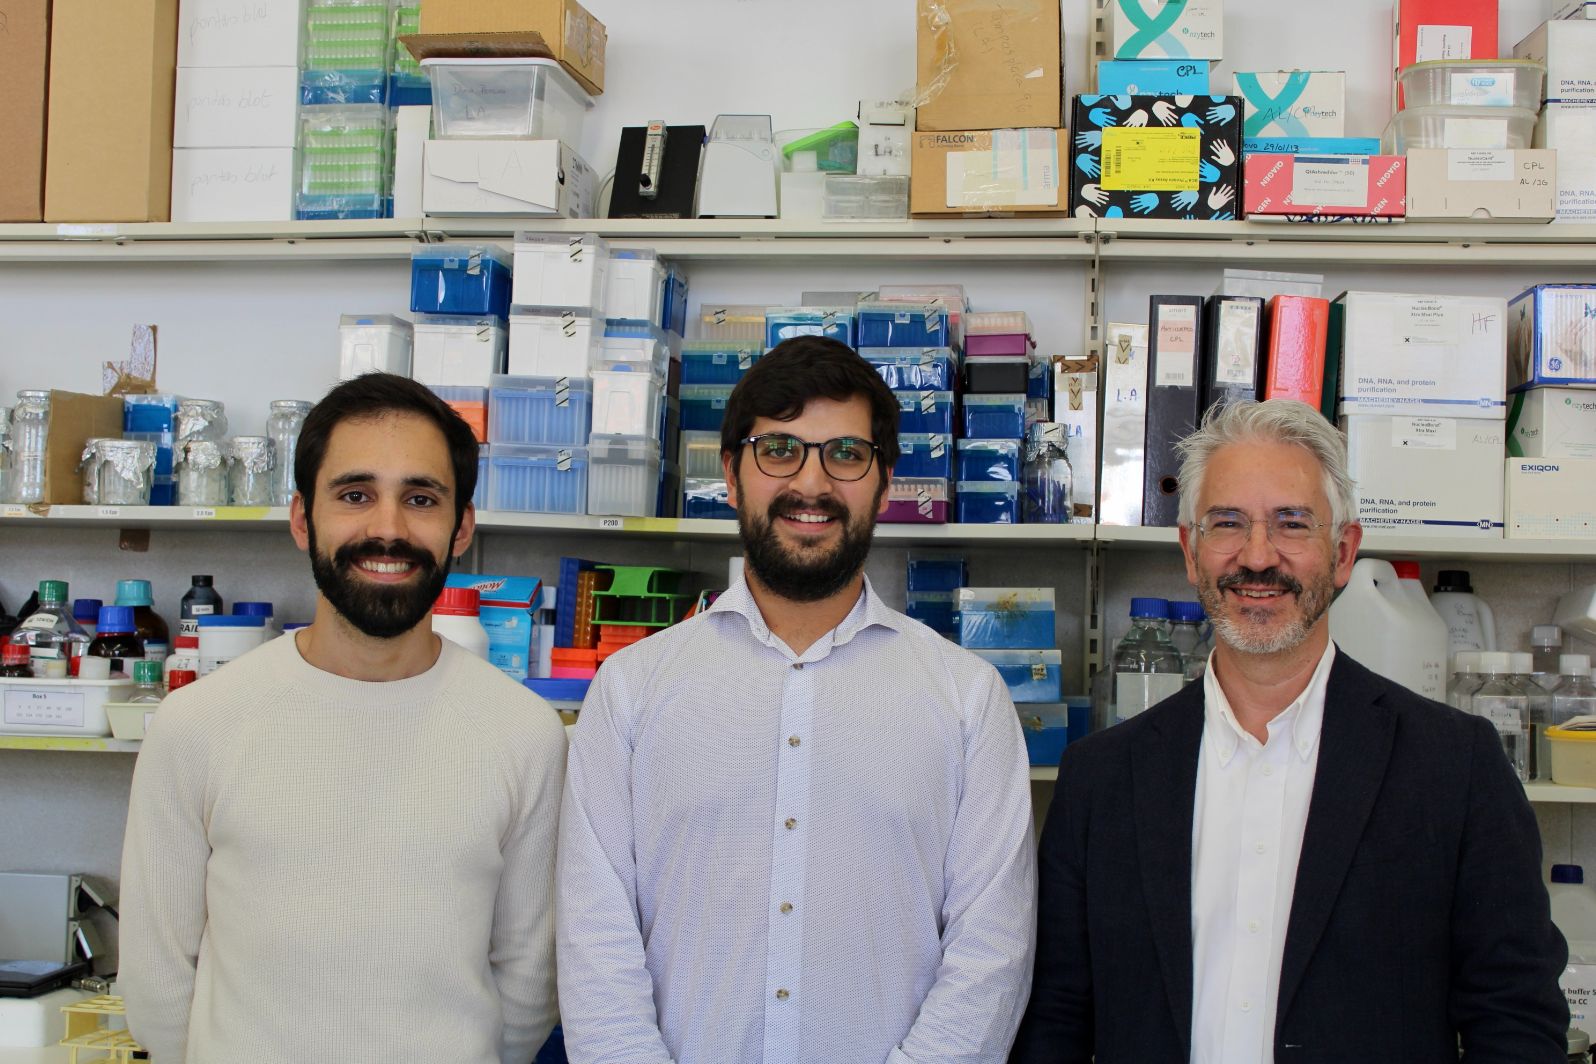 Investigadores da Universidade de Coimbra desenvolvem terapia promissora para o tratamento da Doença de Machado-Joseph